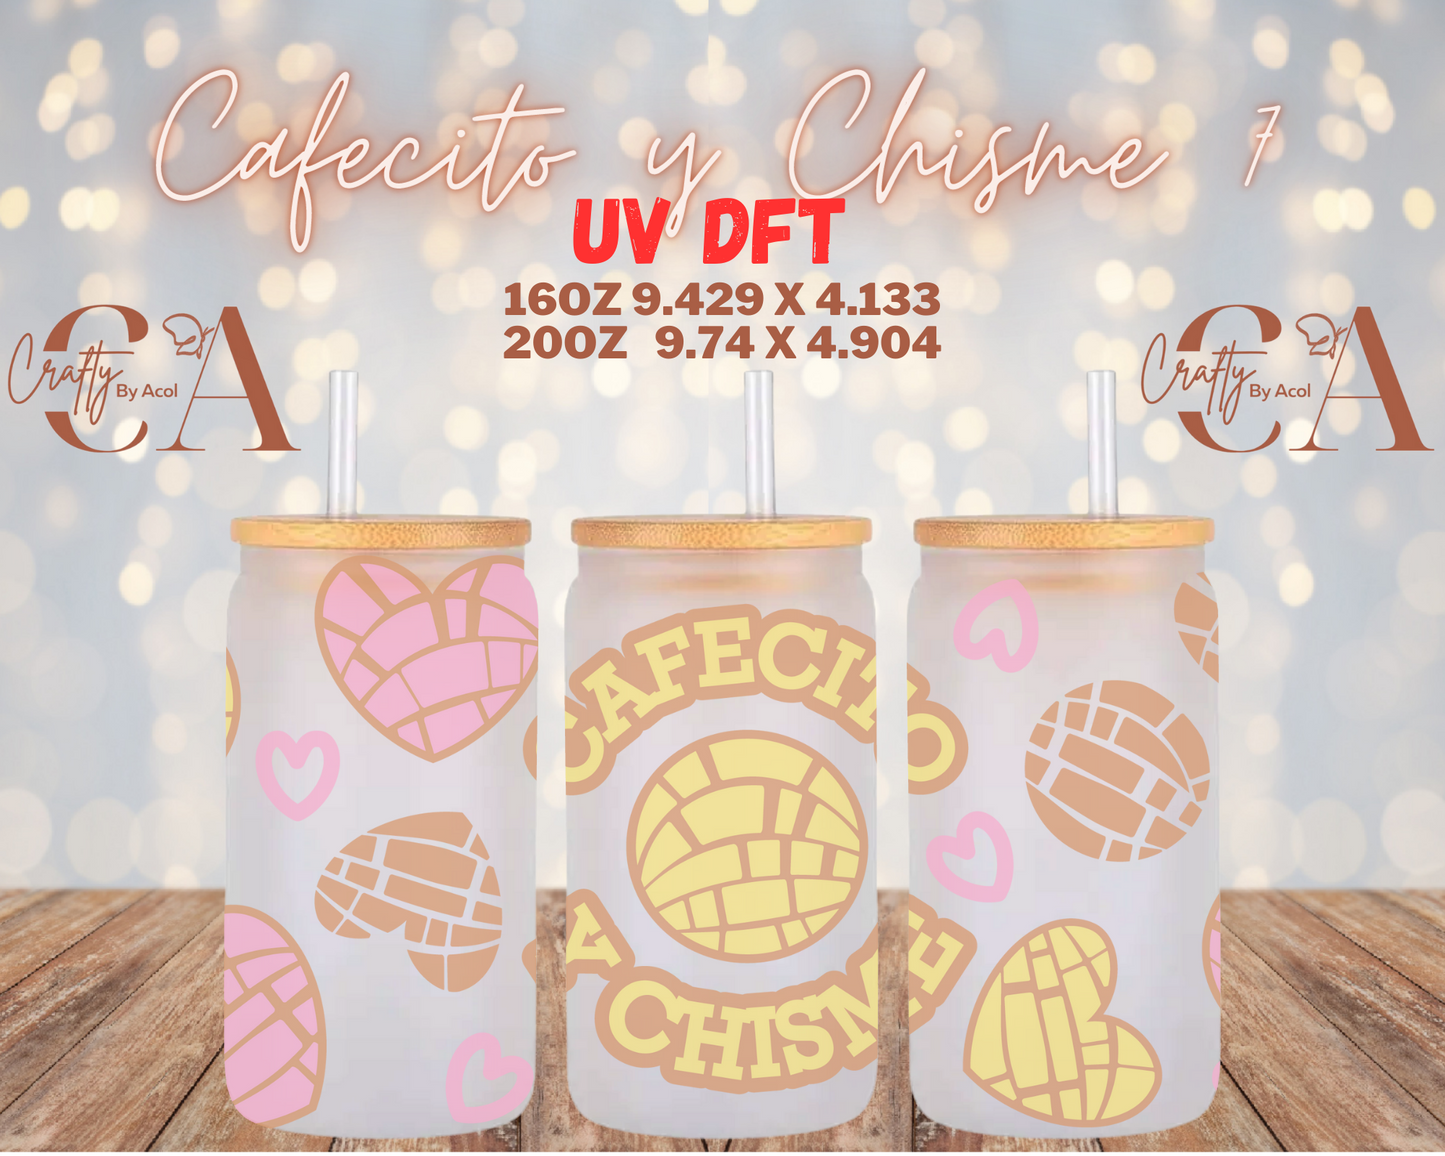 Cafecito y Chisme 7 UV DFT Cup Wrap